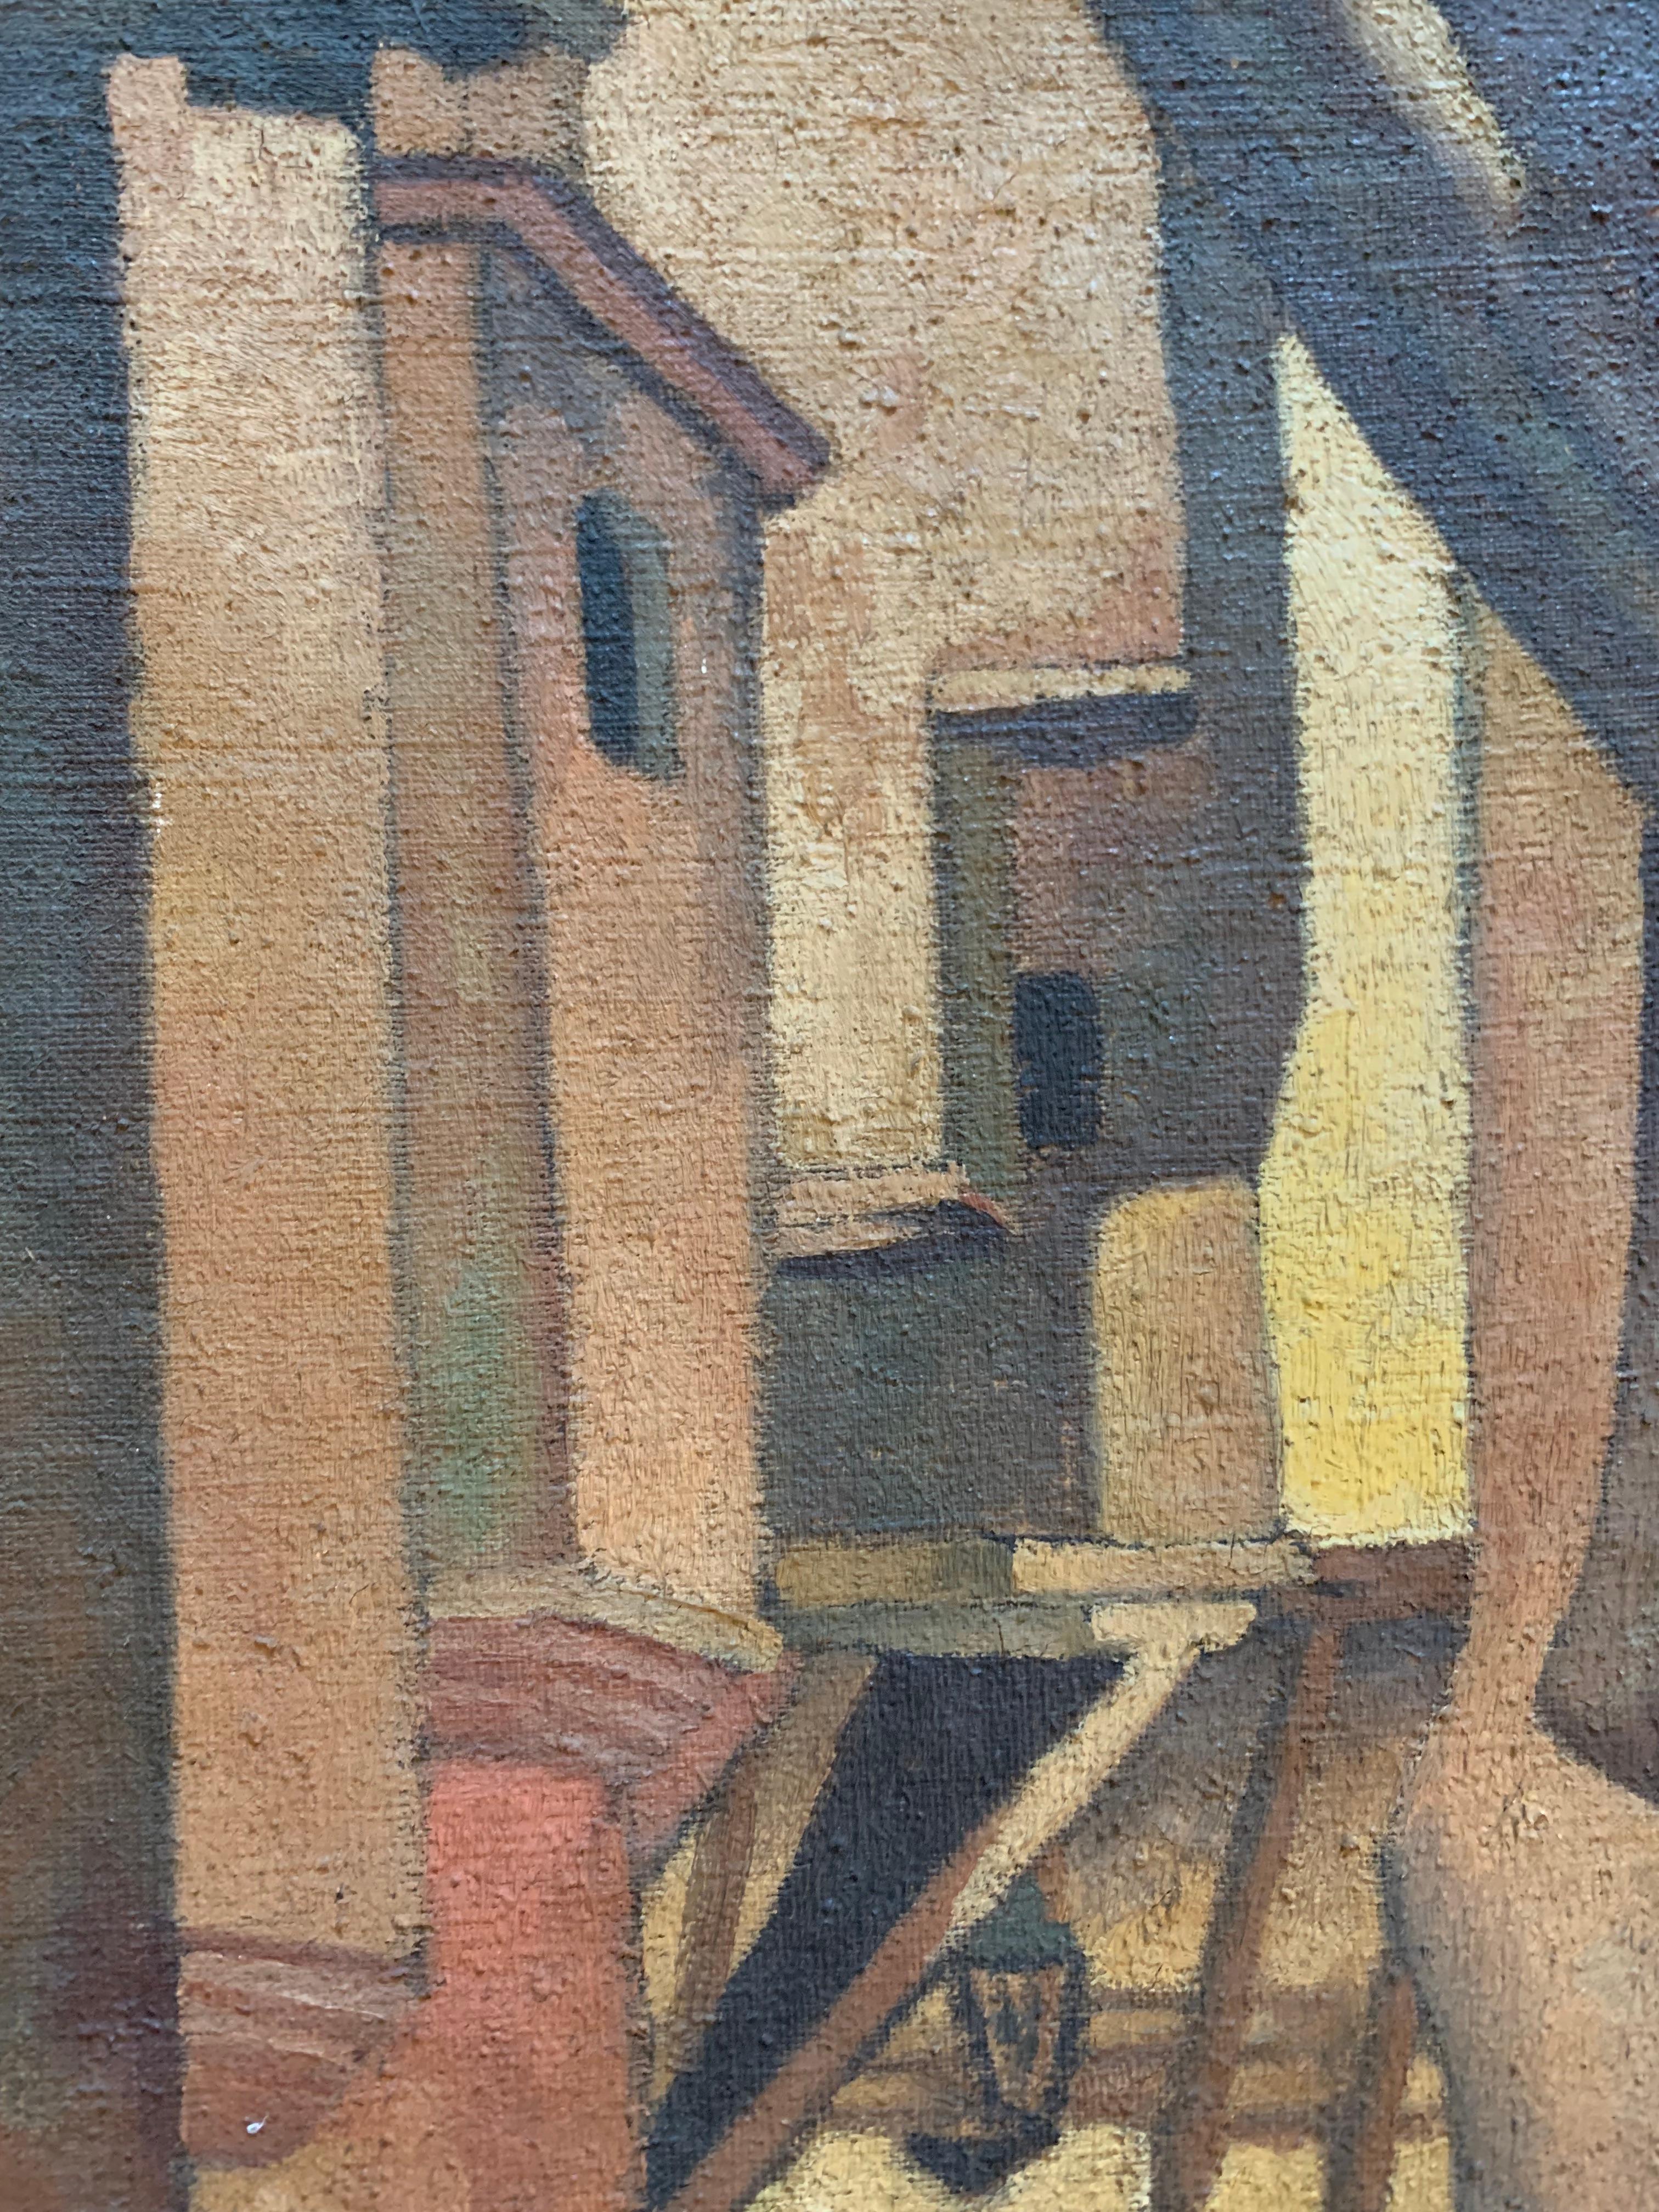 Philip Cheney (1897-1992) In der Kasbah, 1928. Öl auf Leinwand, 16 x 30 Zoll. Signiert und datiert am unteren Rand. 

Zustand: Farbverluste an den Rändern. 